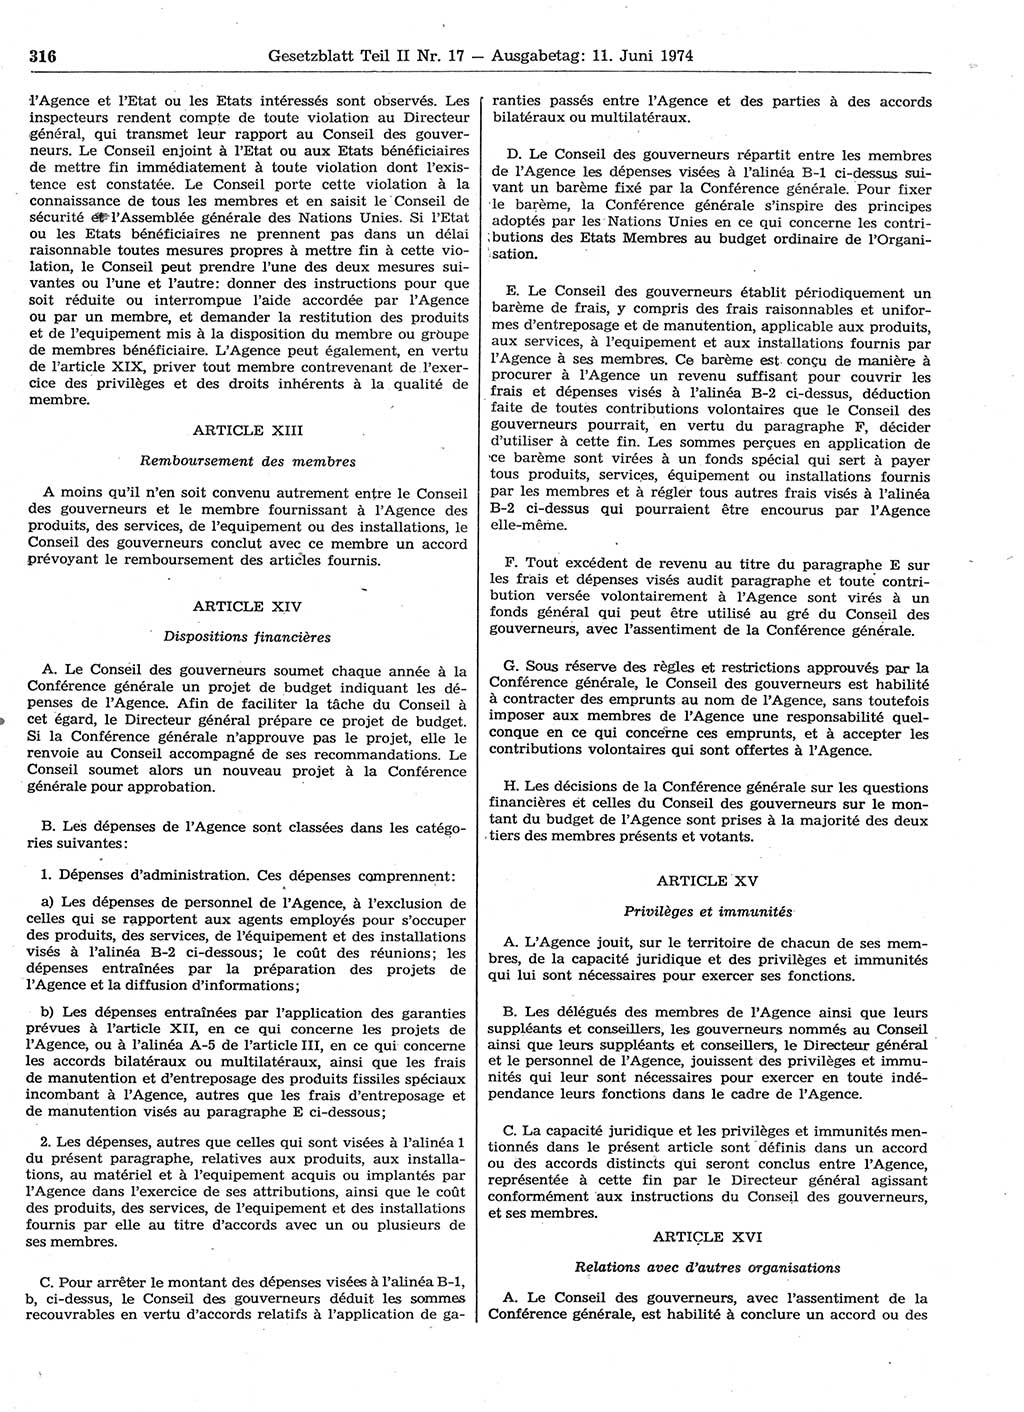 Gesetzblatt (GBl.) der Deutschen Demokratischen Republik (DDR) Teil ⅠⅠ 1974, Seite 316 (GBl. DDR ⅠⅠ 1974, S. 316)